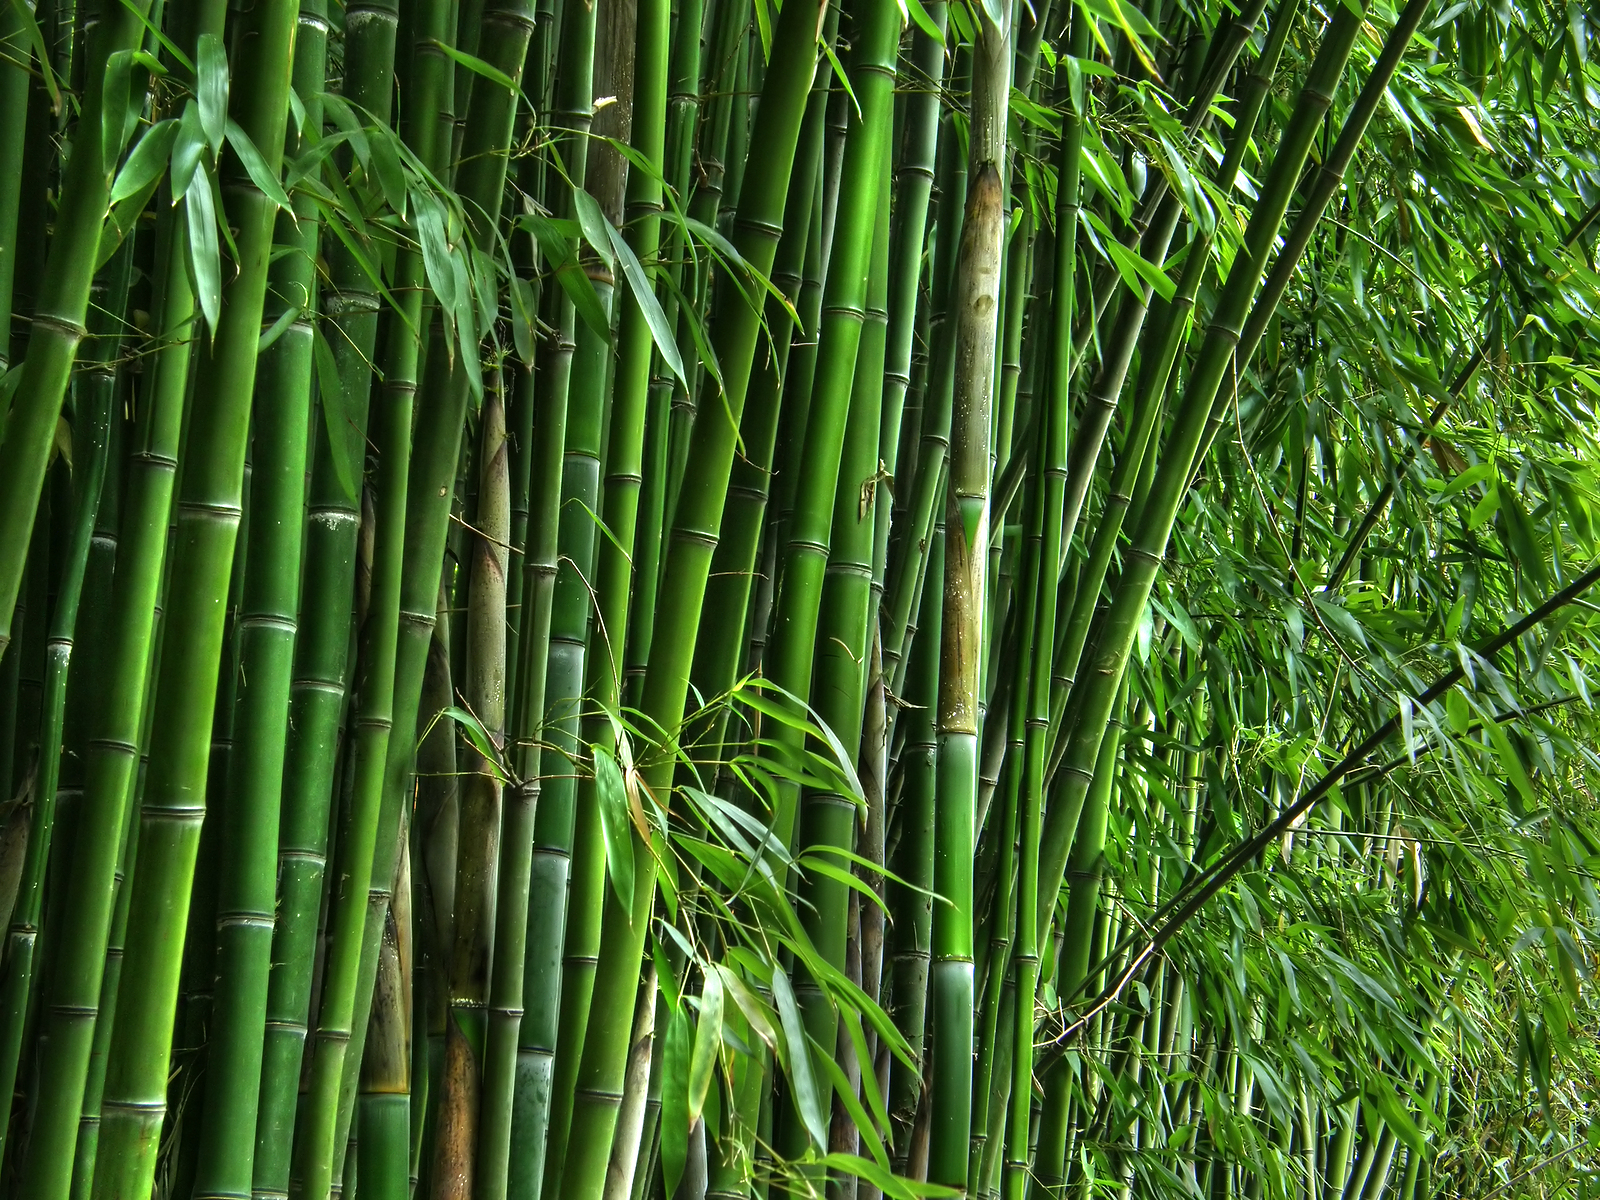 Glovimex bamboo